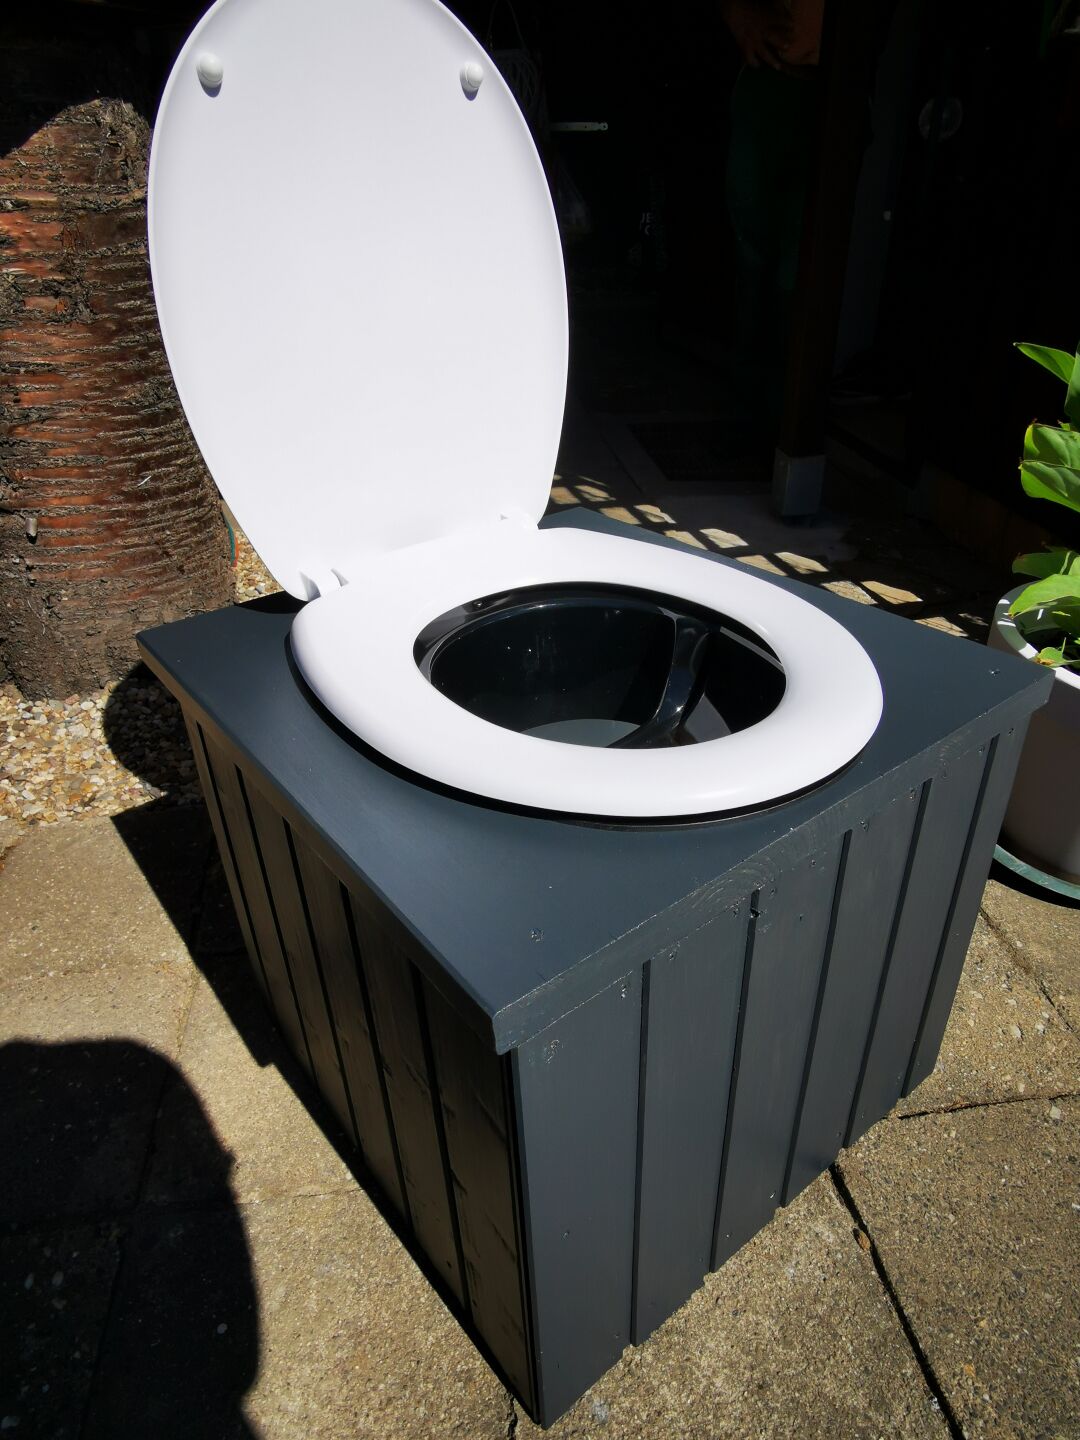 Construction of a garden toilet as a portable toilet 